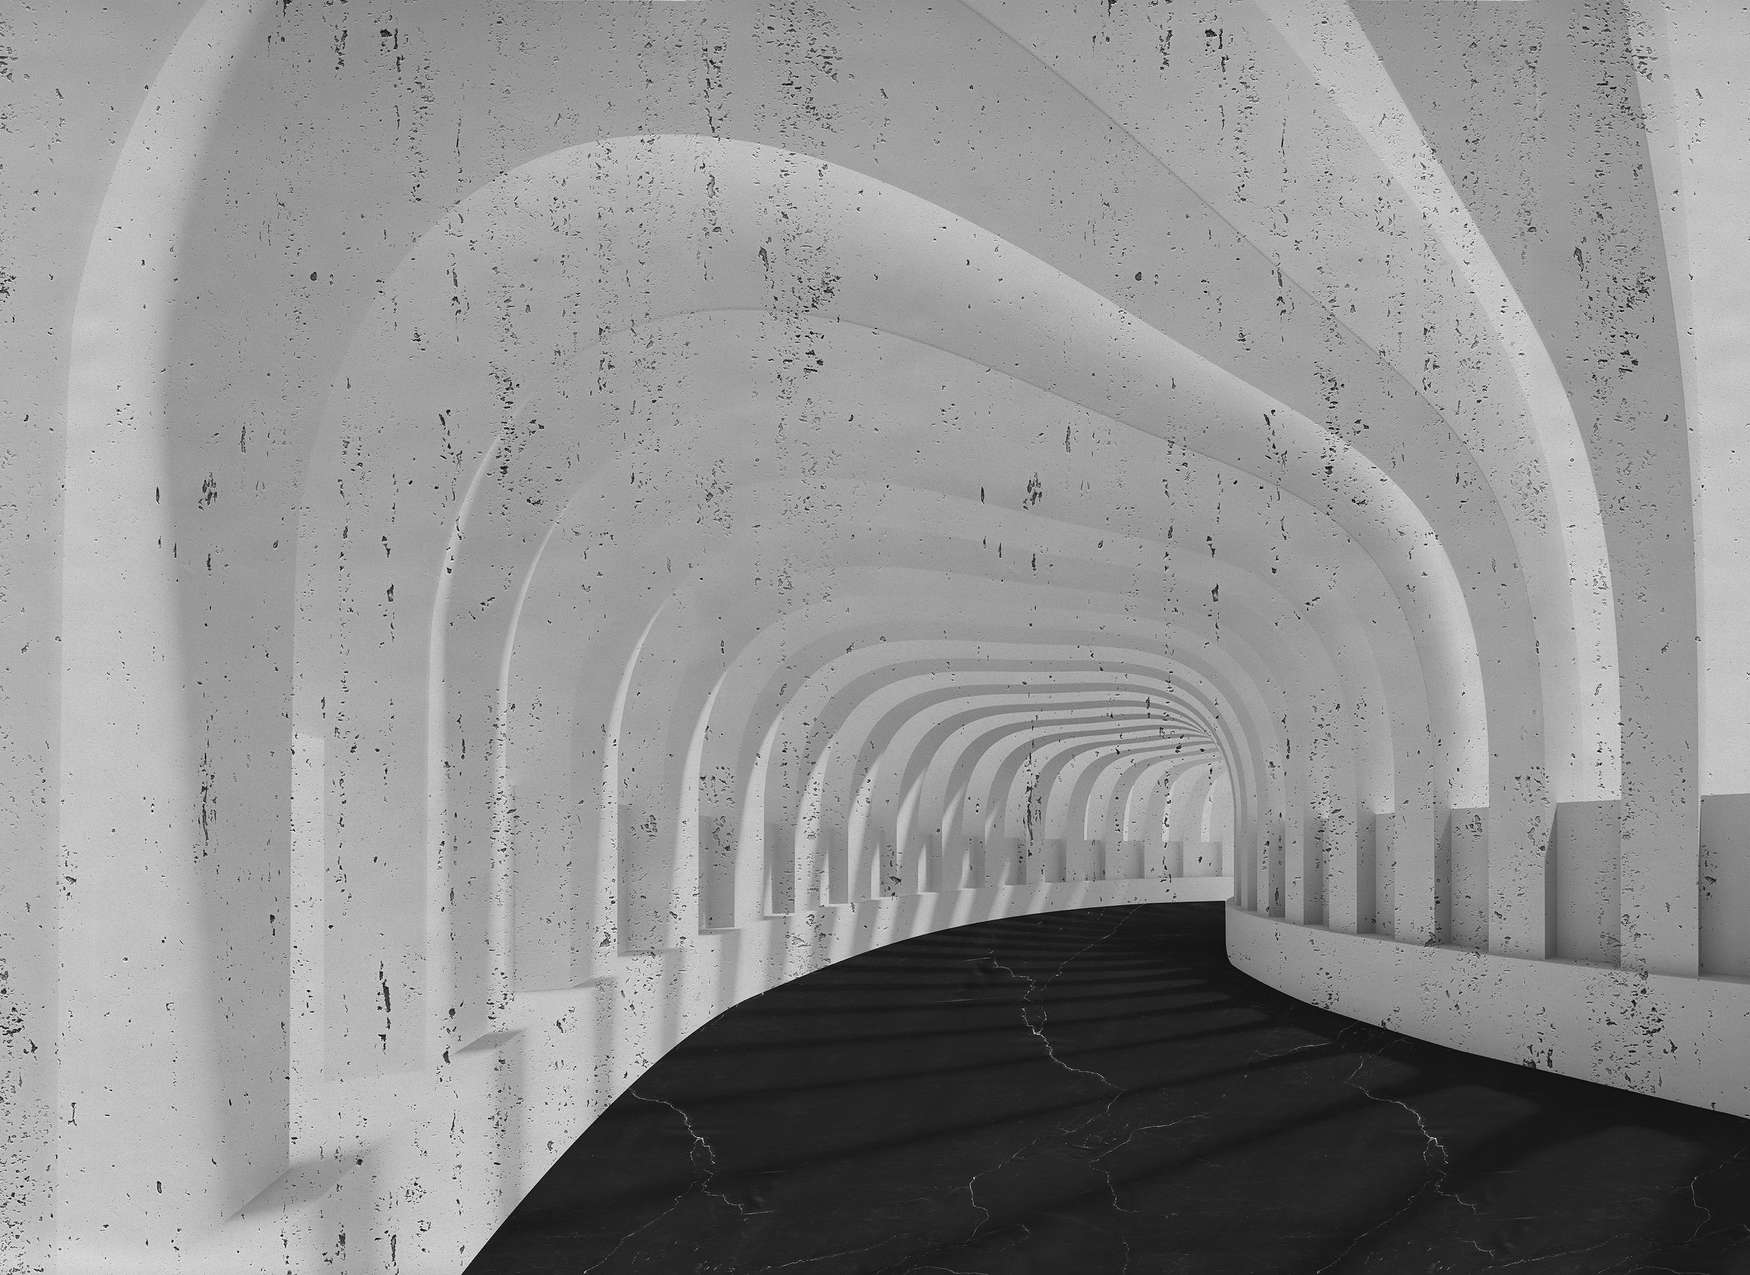             Fotomurali 3D Tunnel di cemento con archi - Grigio, Nero
        